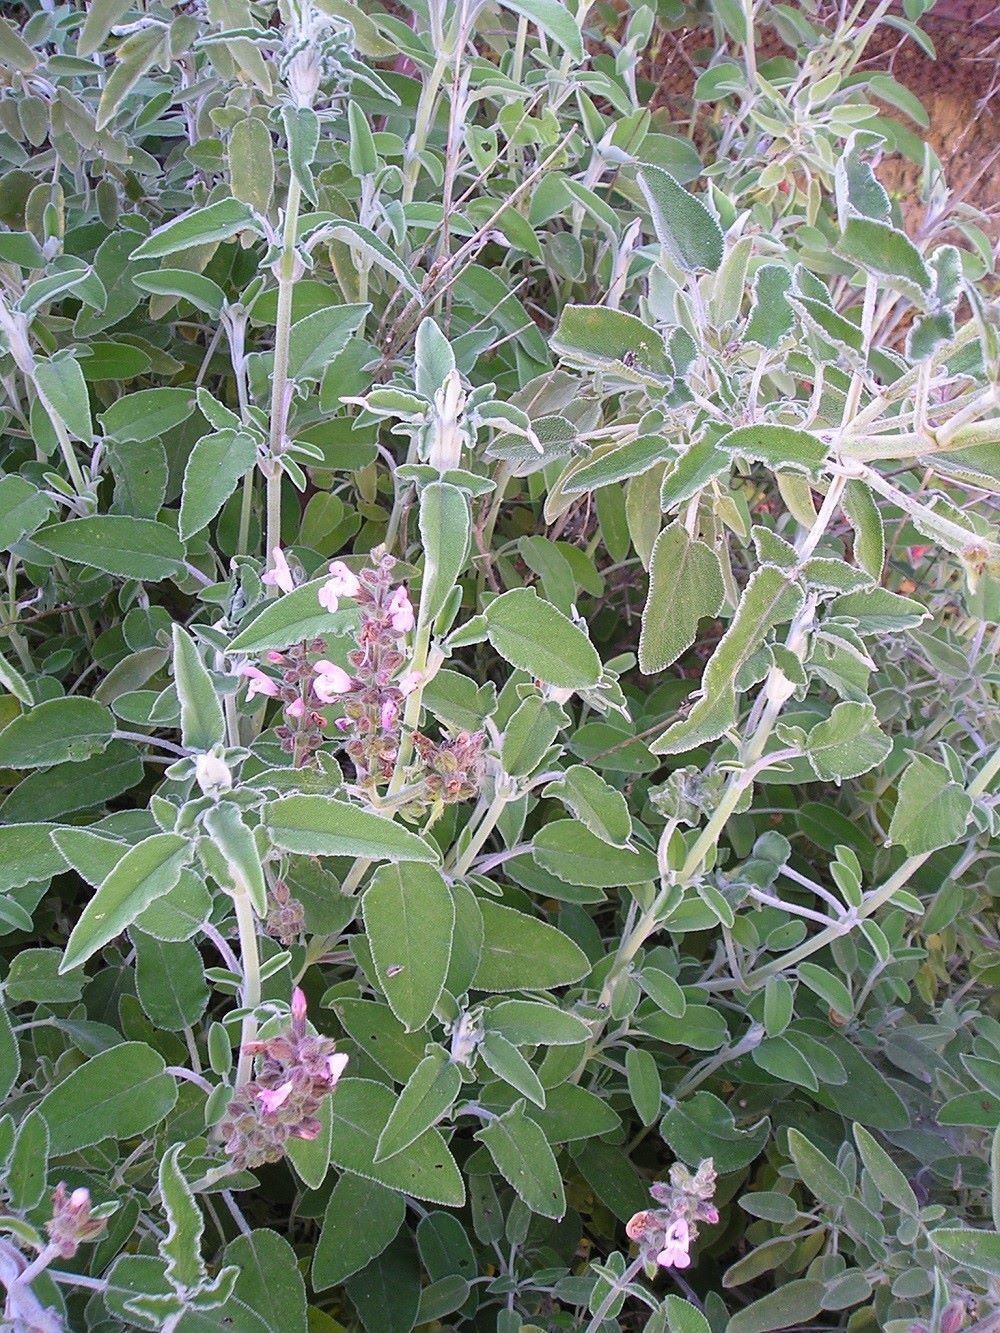 עלי מרווה משולשת לחליטת מרפא / Salvia fruticosa Mill